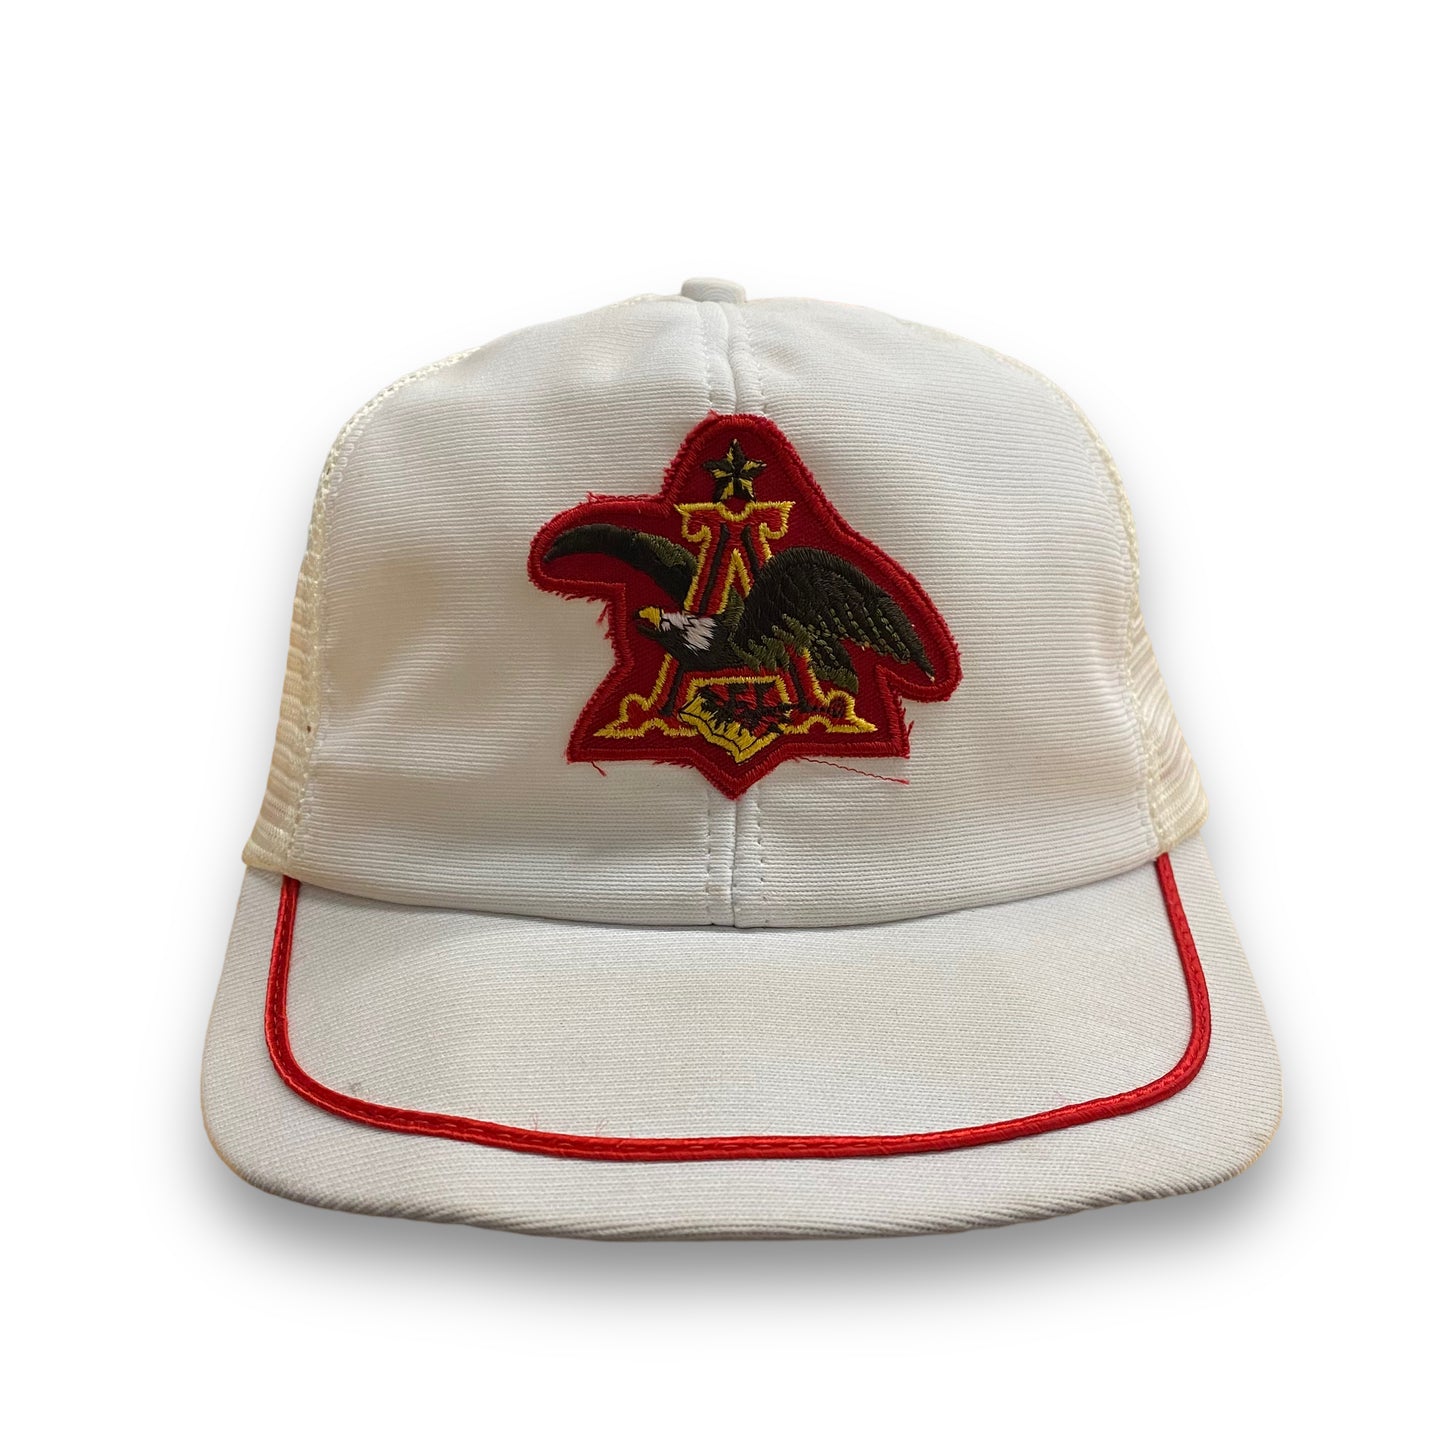 Vintage 1980s Anheuser-Busch Trucker Hat